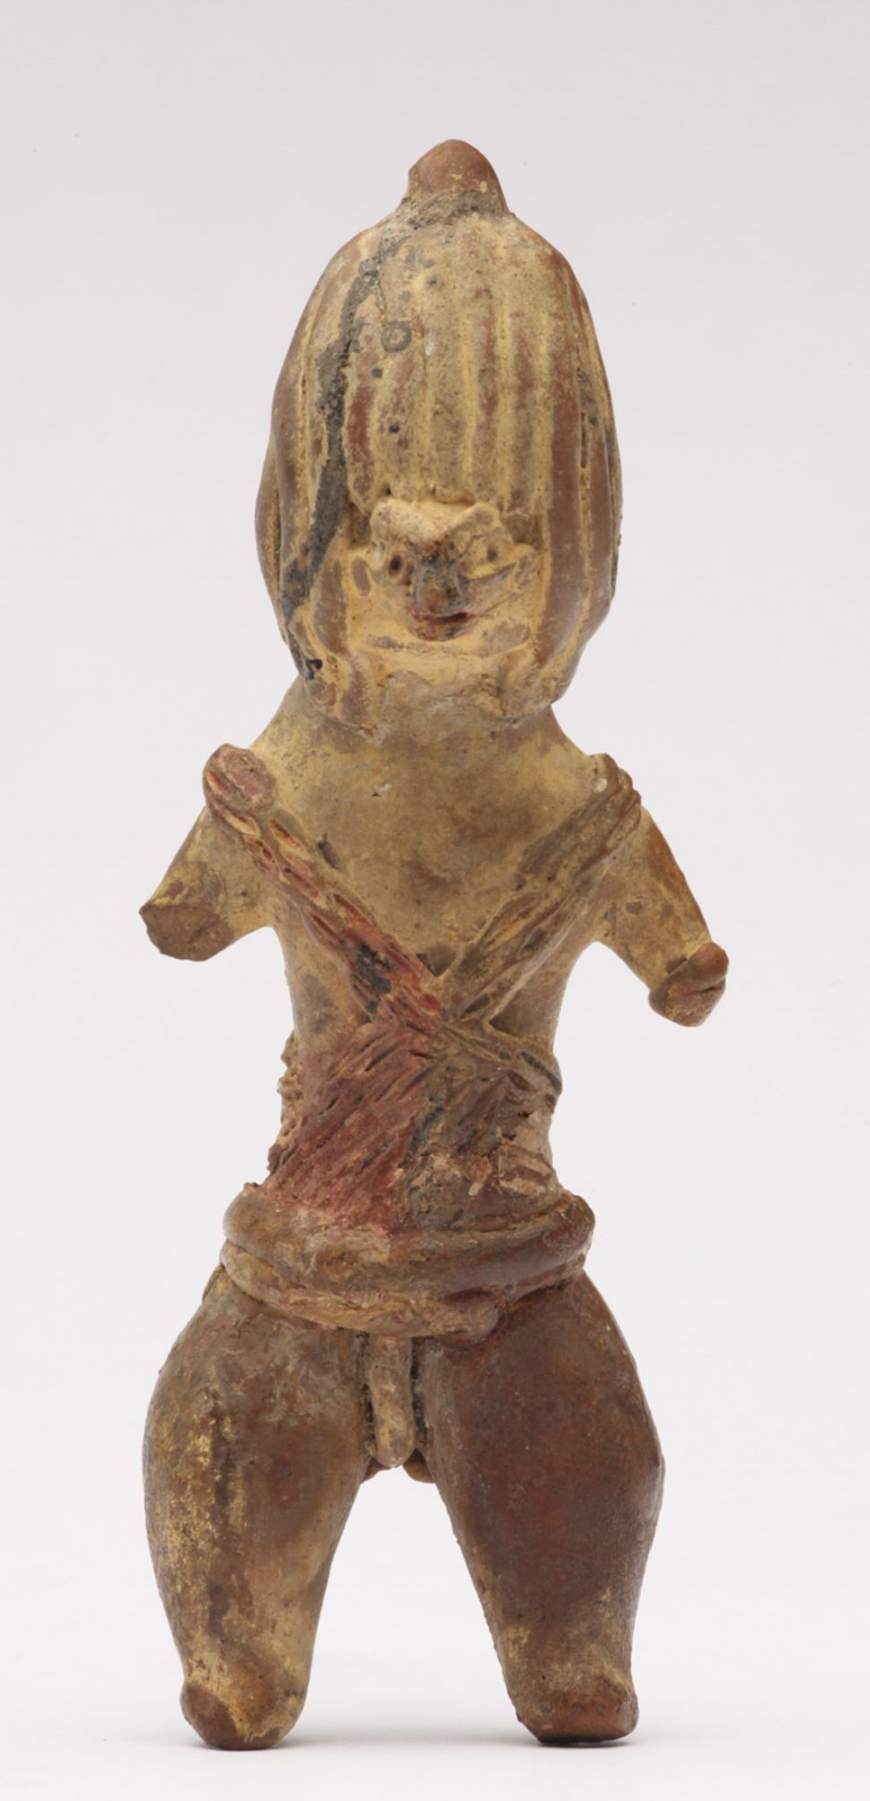 Shaman, c. 1200–600 B.C.E. (Middle Preclassic, Tlatilco), 9.5 cm high (National Museum of Anthropology, Mexico City)